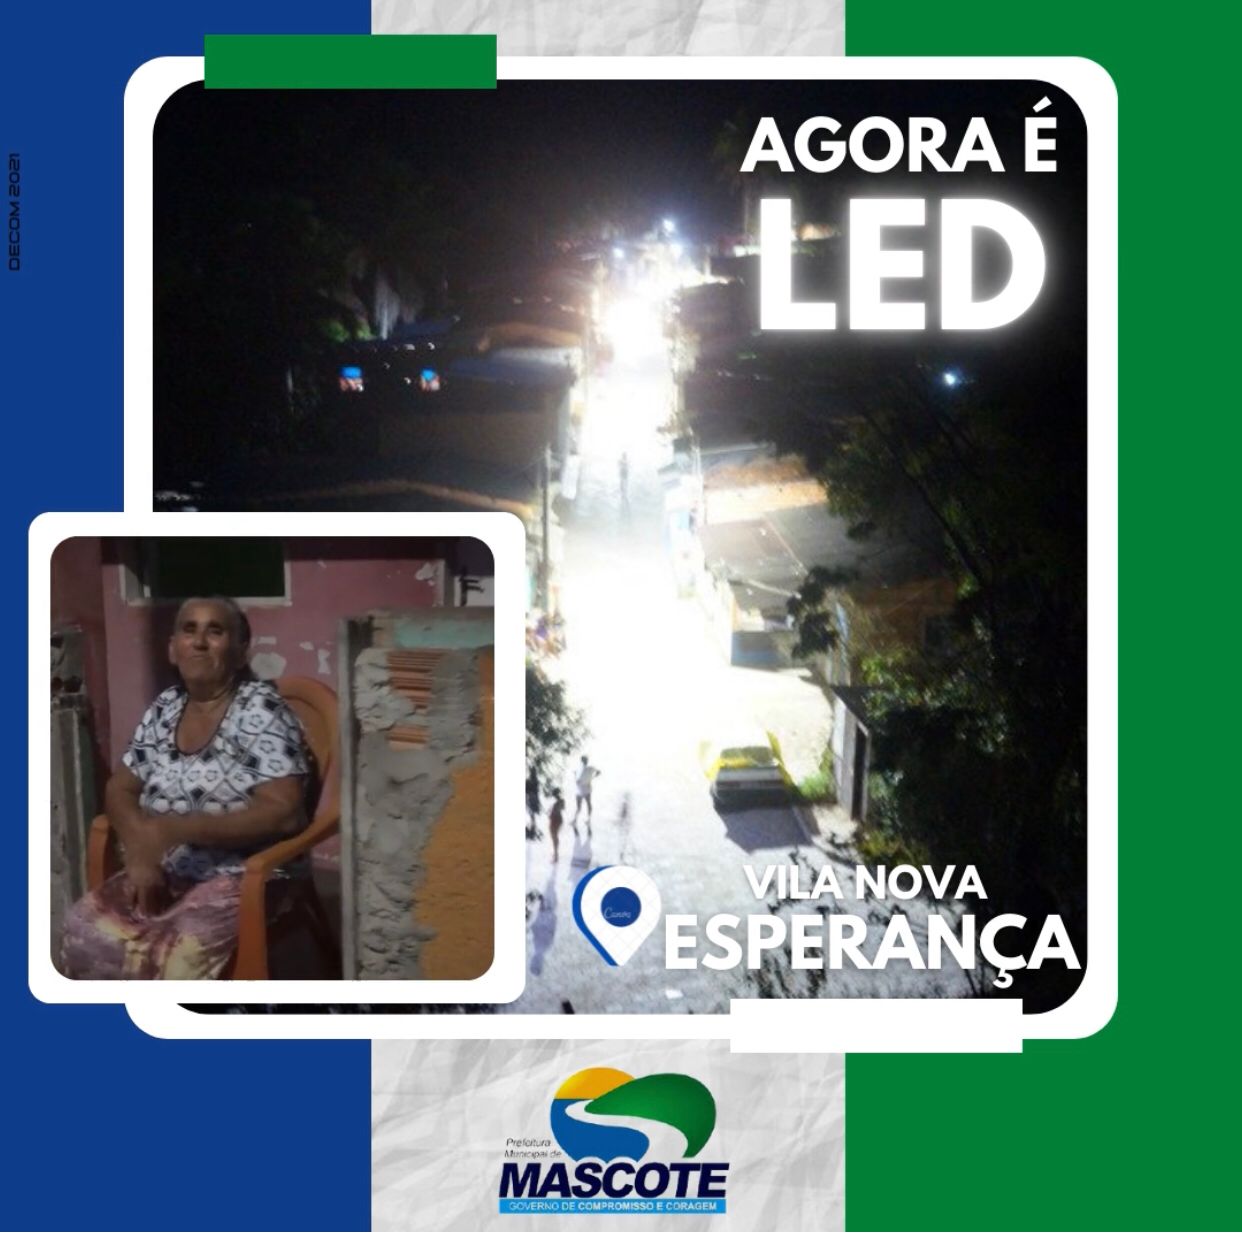 Mascote: Bairro Vila Nova Esperança Ganha Iluminação Em LED!